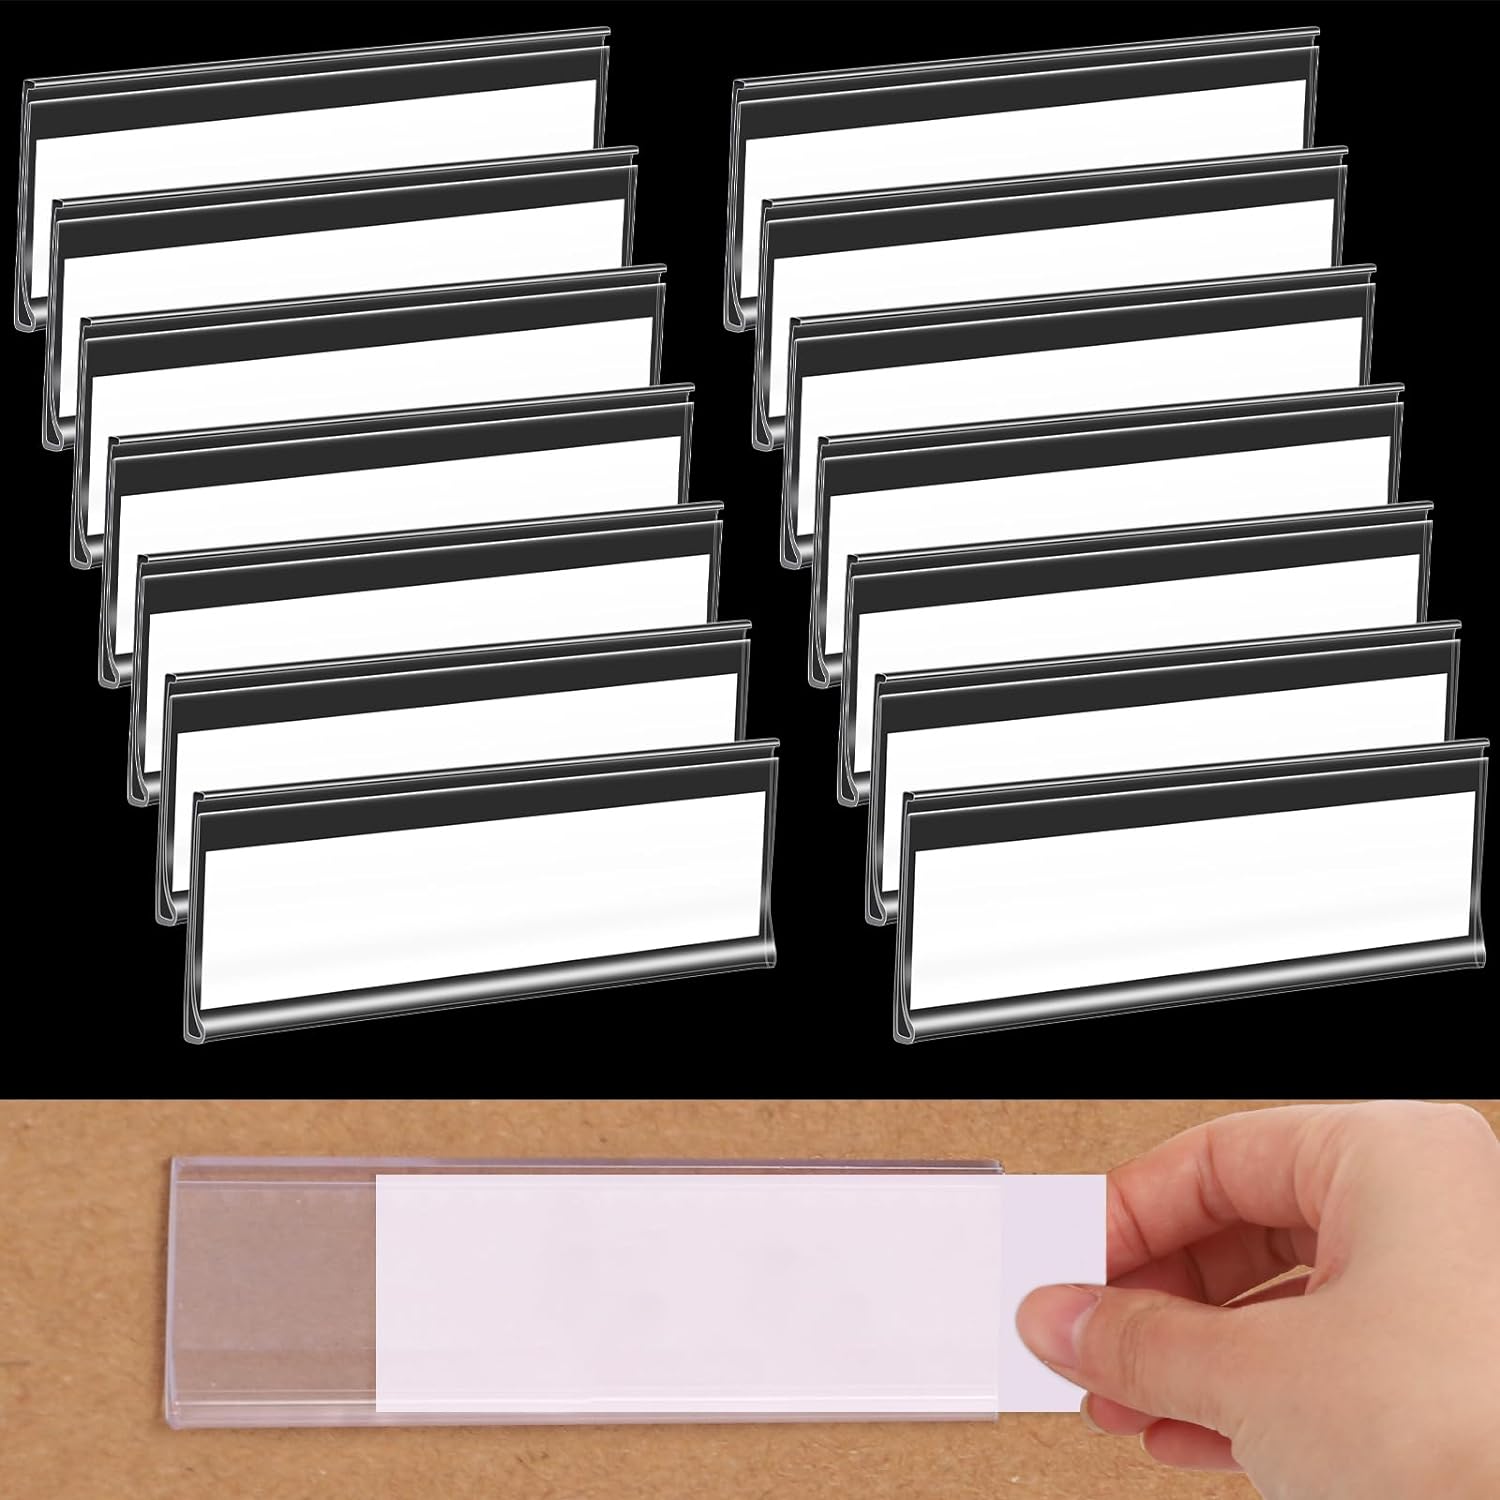 60 etiquetas para estantes de 3 x 1 pulgada con 60 etiquetas de papel blanco